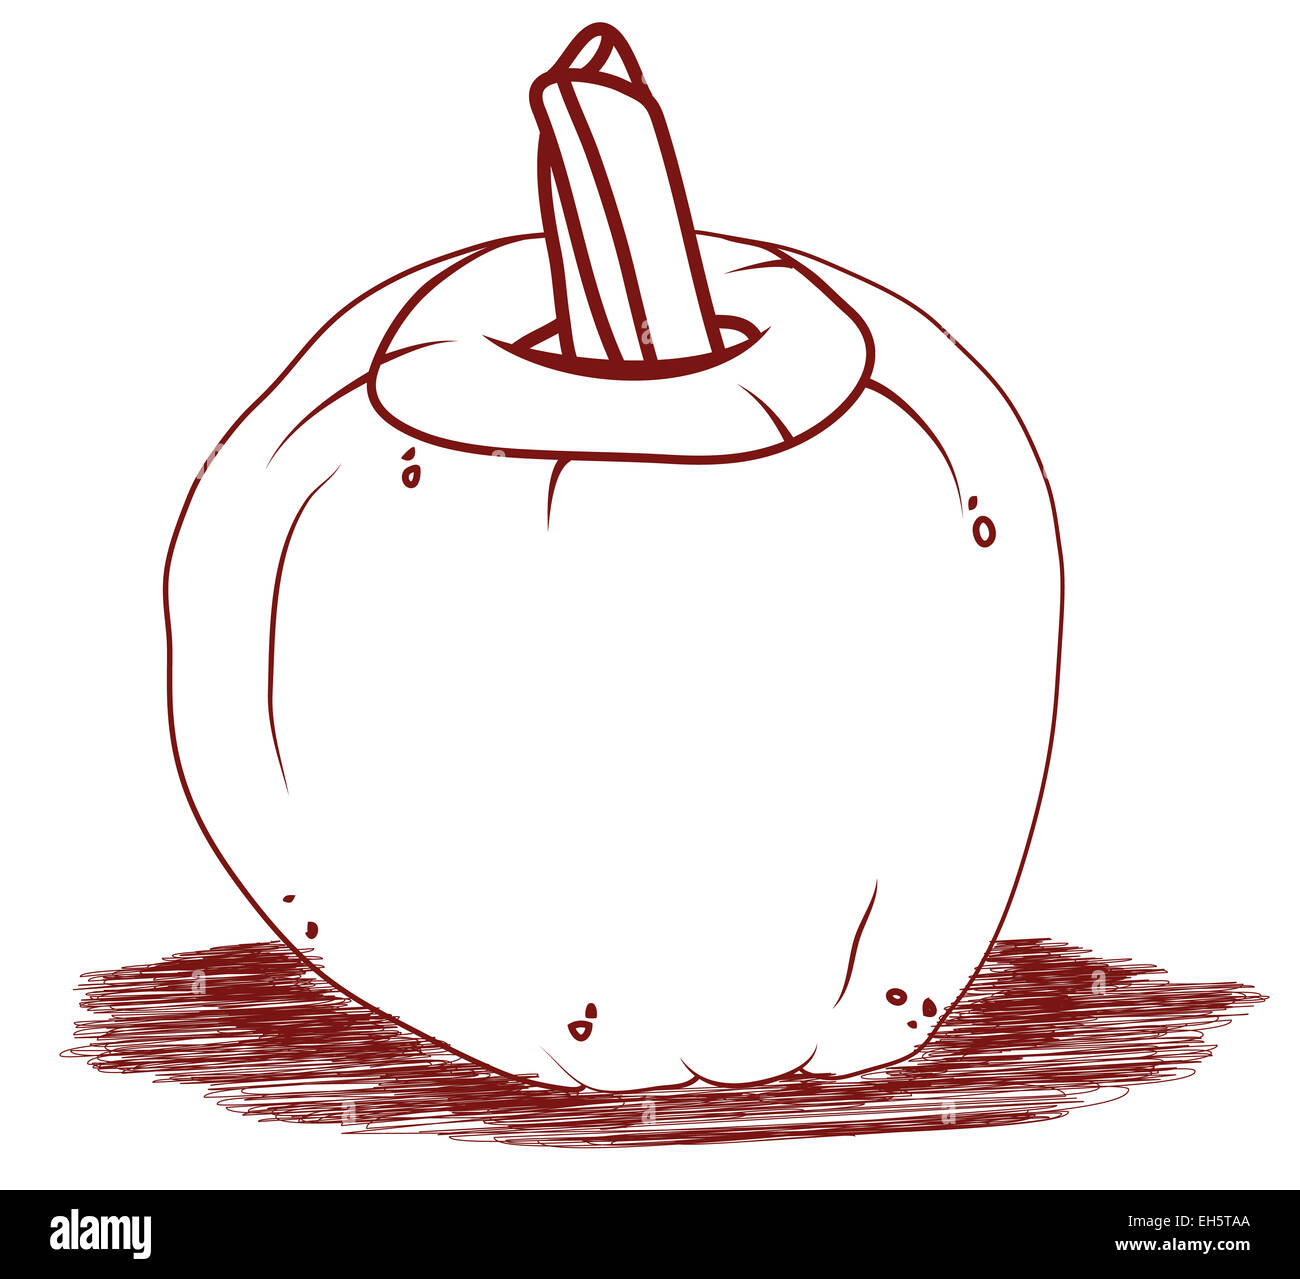 Pumpkin artistic Halloween illustration. Halloween and autumn Stock Photo